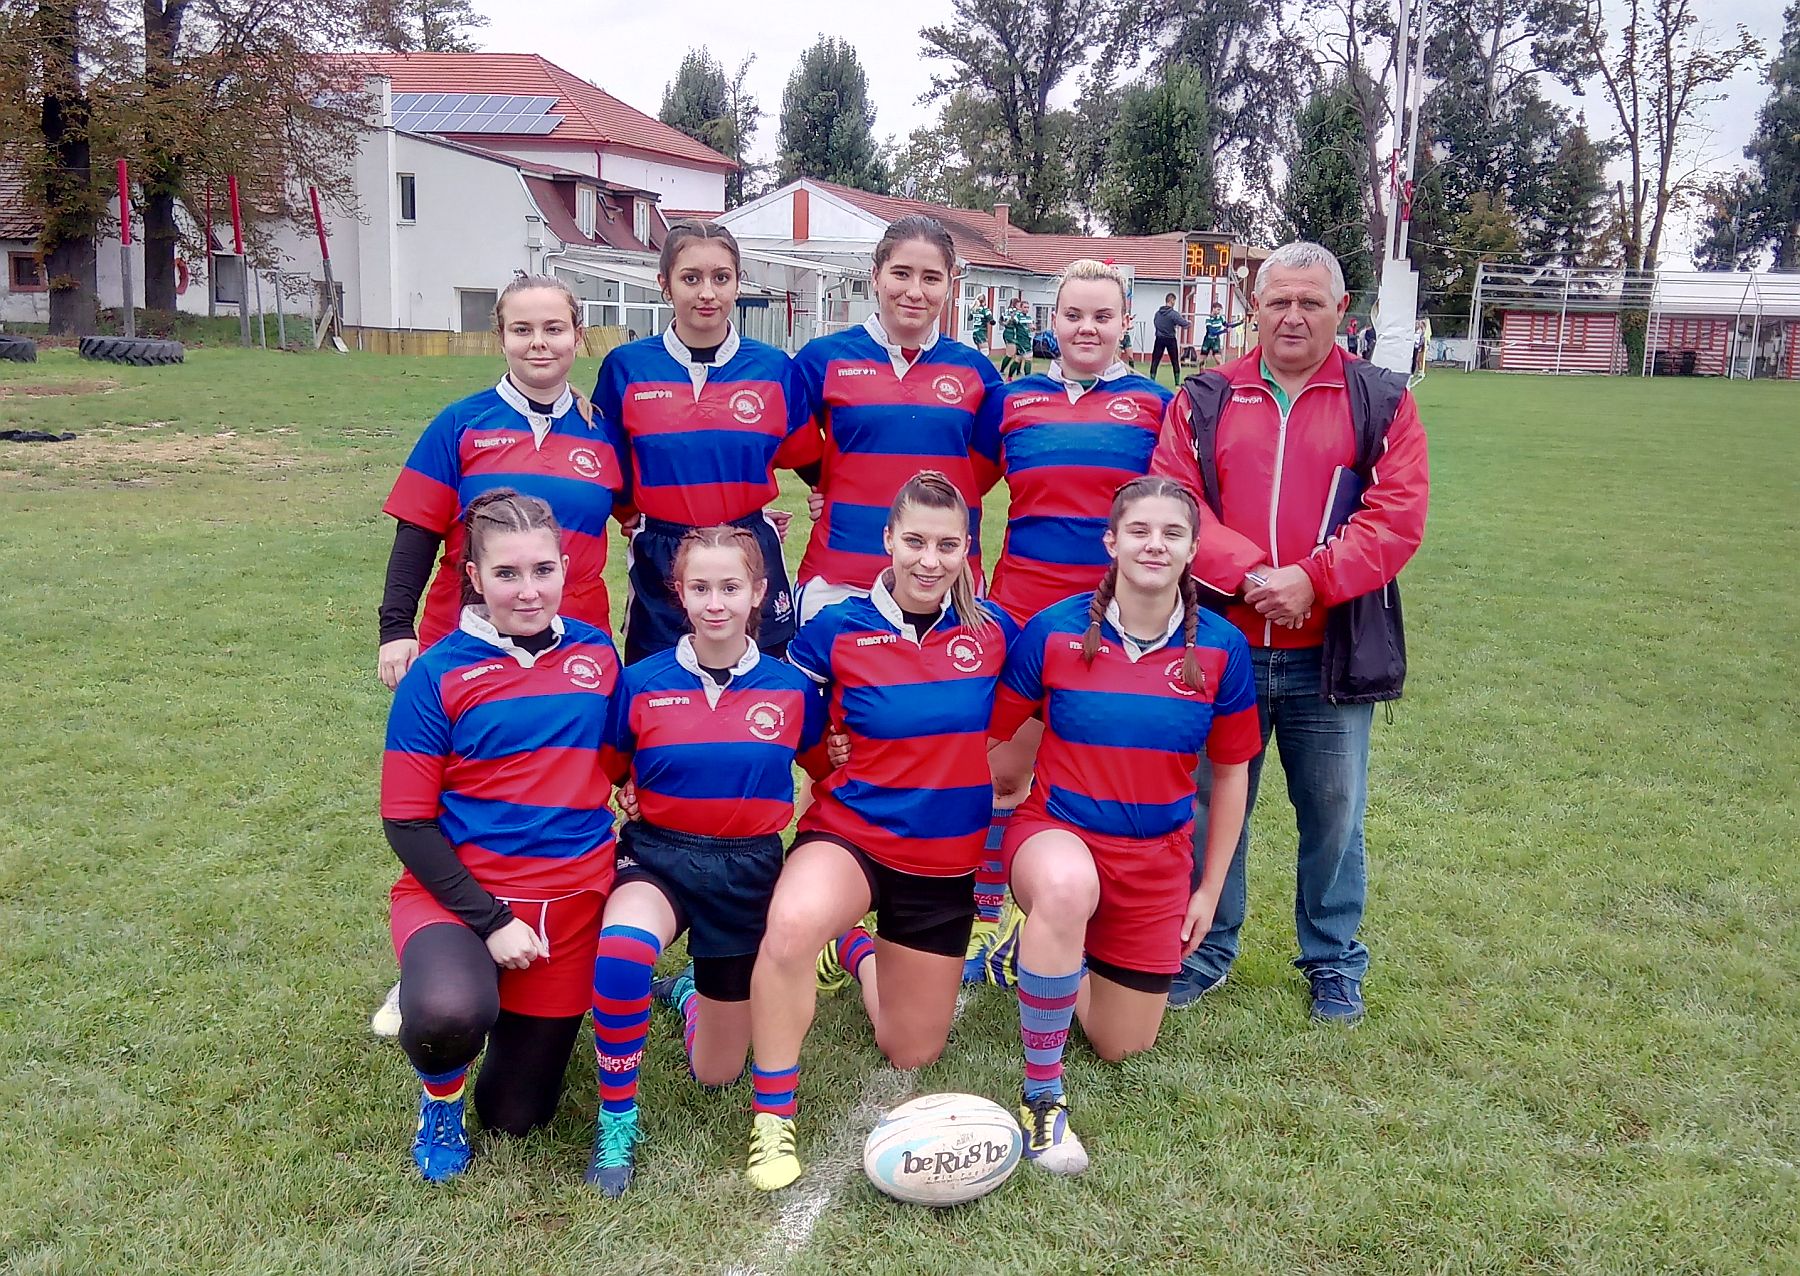 Kecskeméten és Esztergomban is sikerrel szerepeltek a Fehérvár Rugby Club csapatai